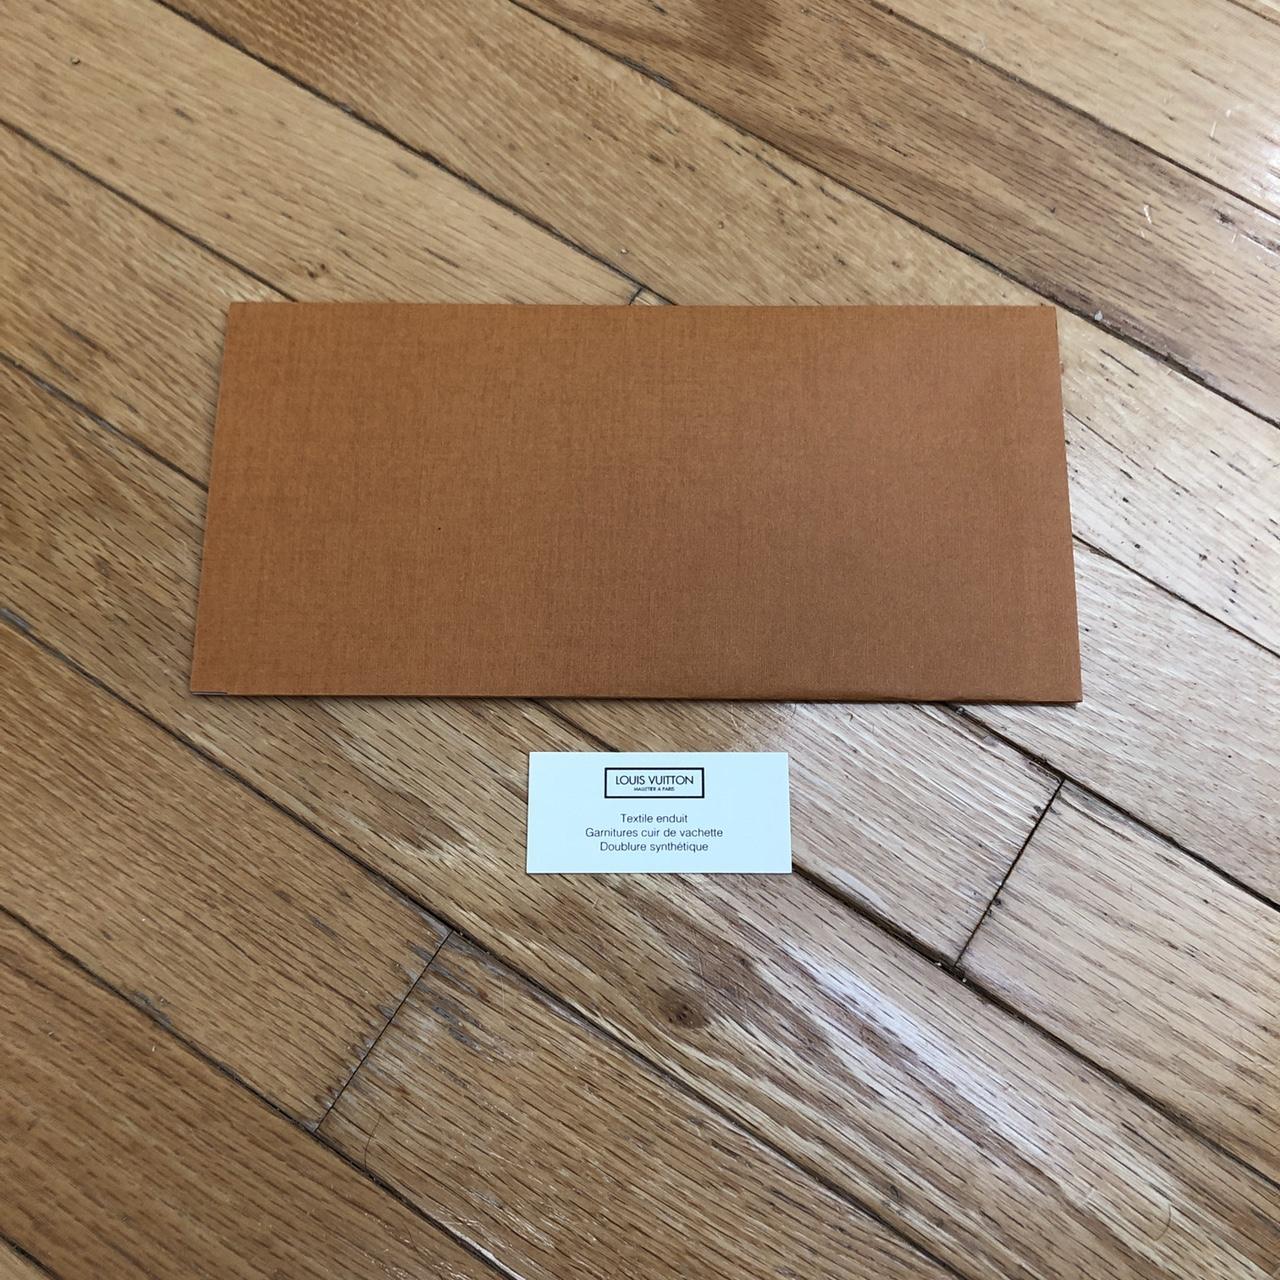 Authentic Louis Vuitton envelope and authentication